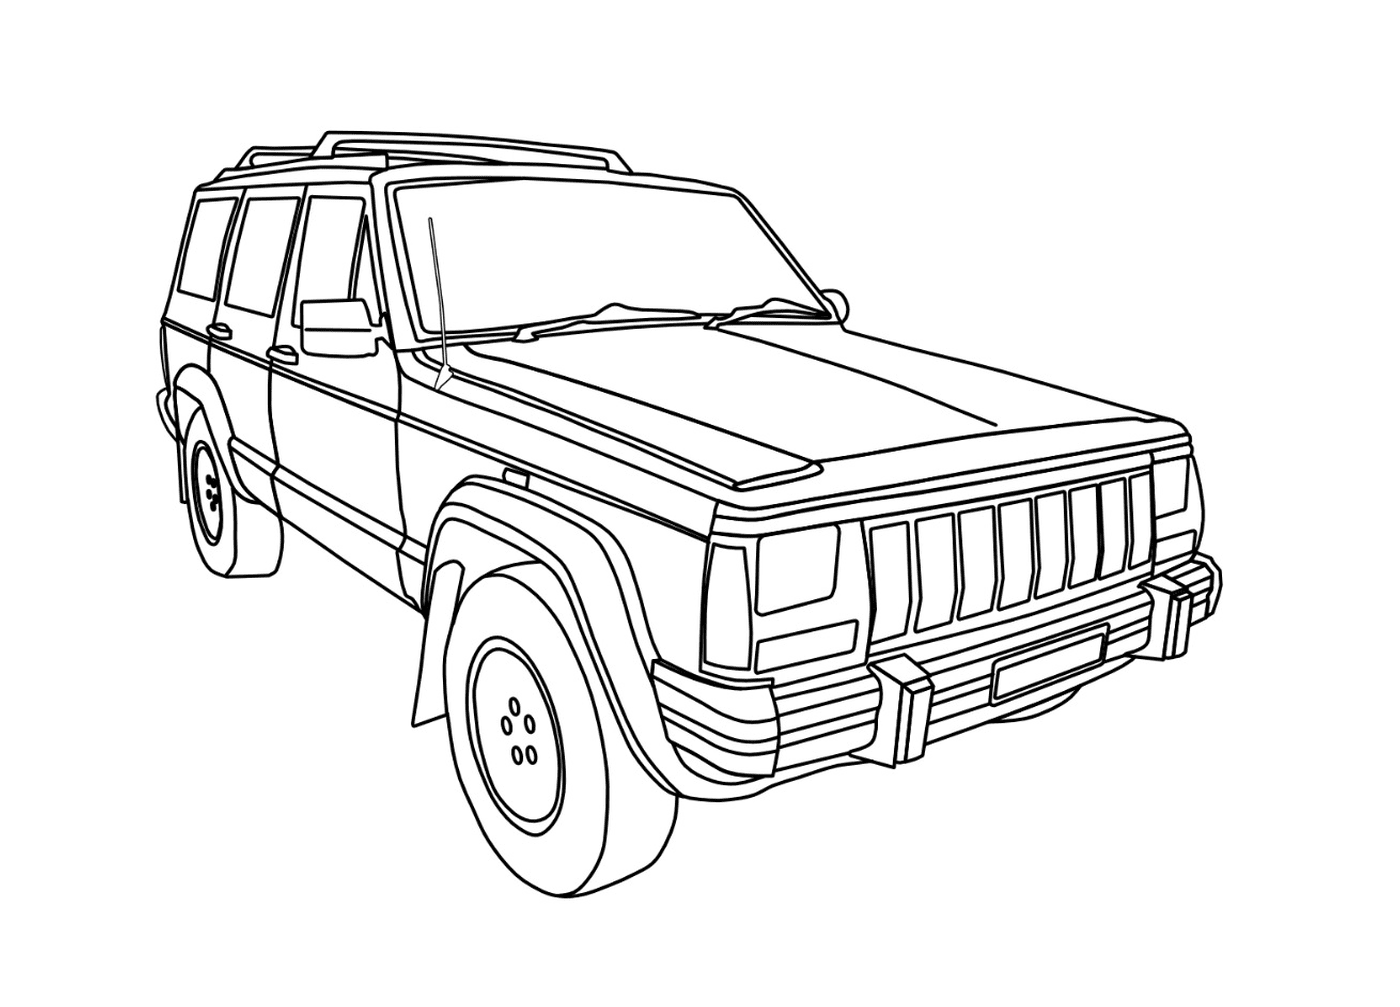  Ex Jeep Car 